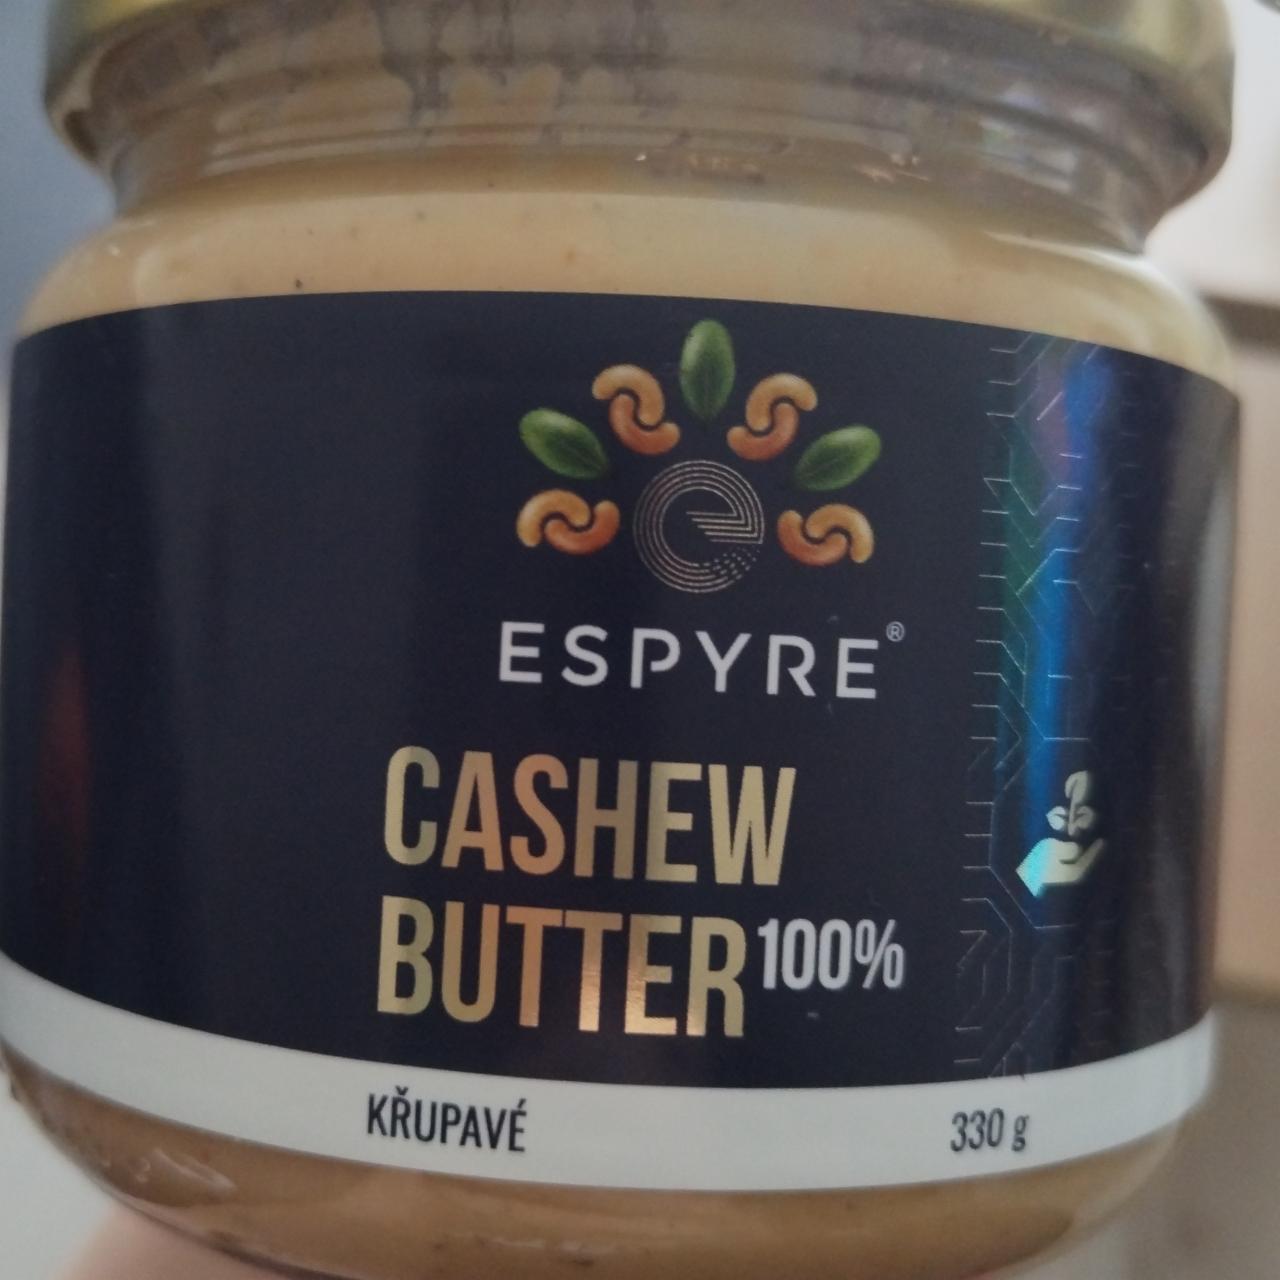 Fotografie - Cashew butter 100% křupavé Espyre